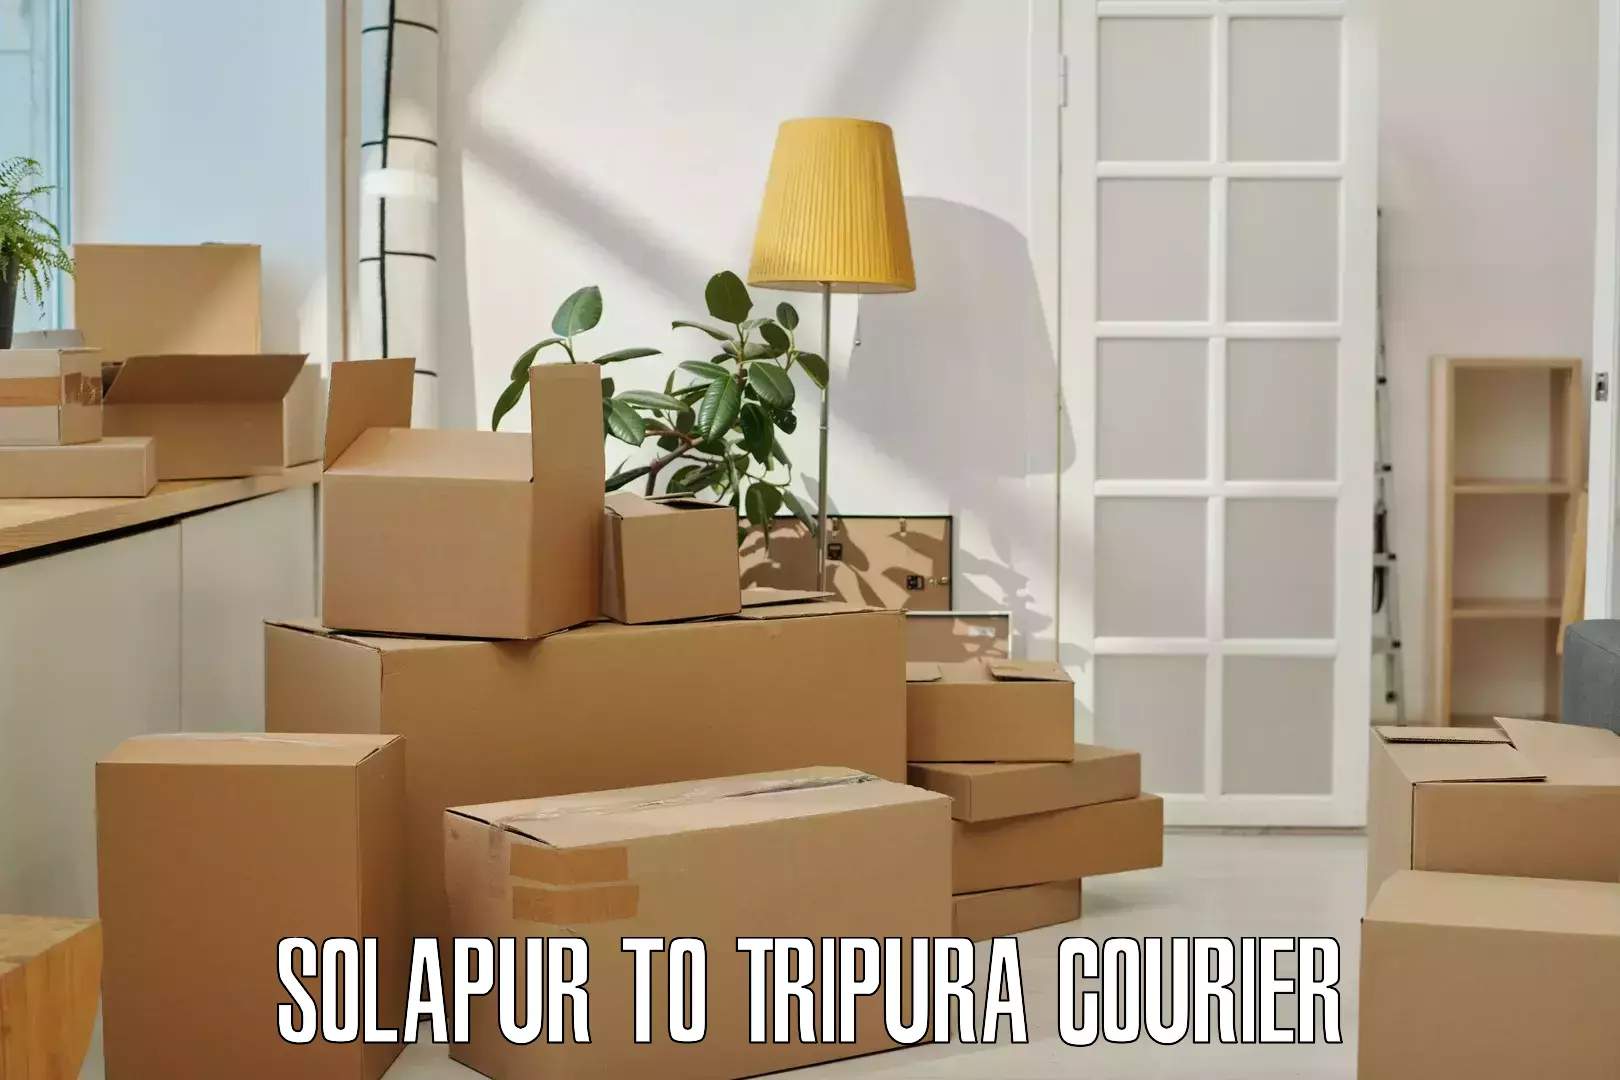 24-hour courier service Solapur to IIIT Agartala